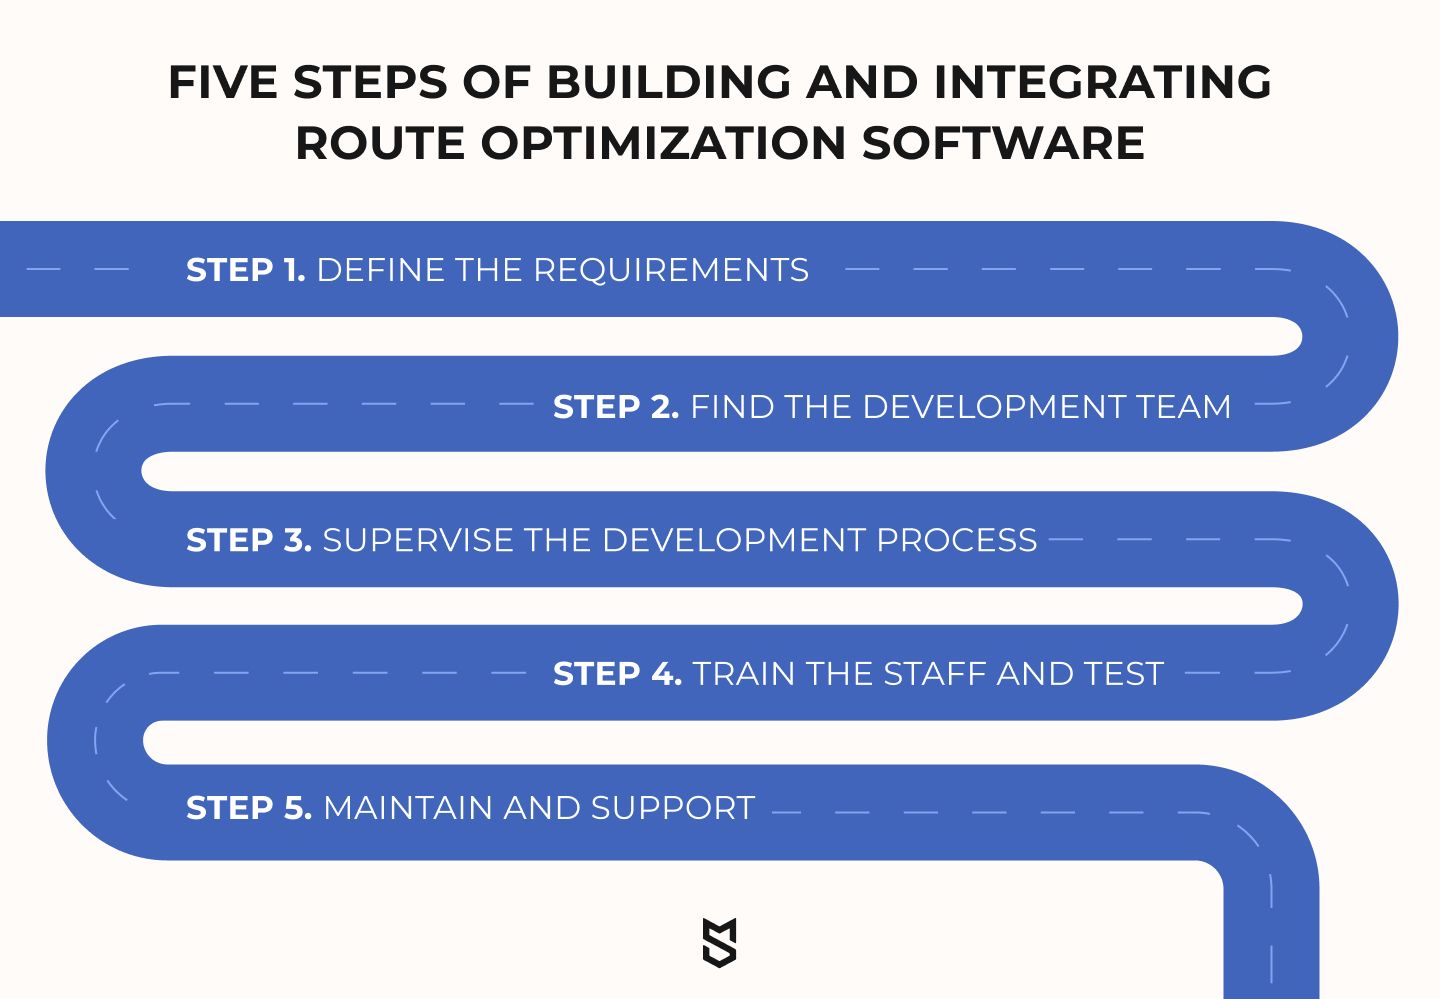 خمس خطوات لبناء ودمج برامج تحسين المسار